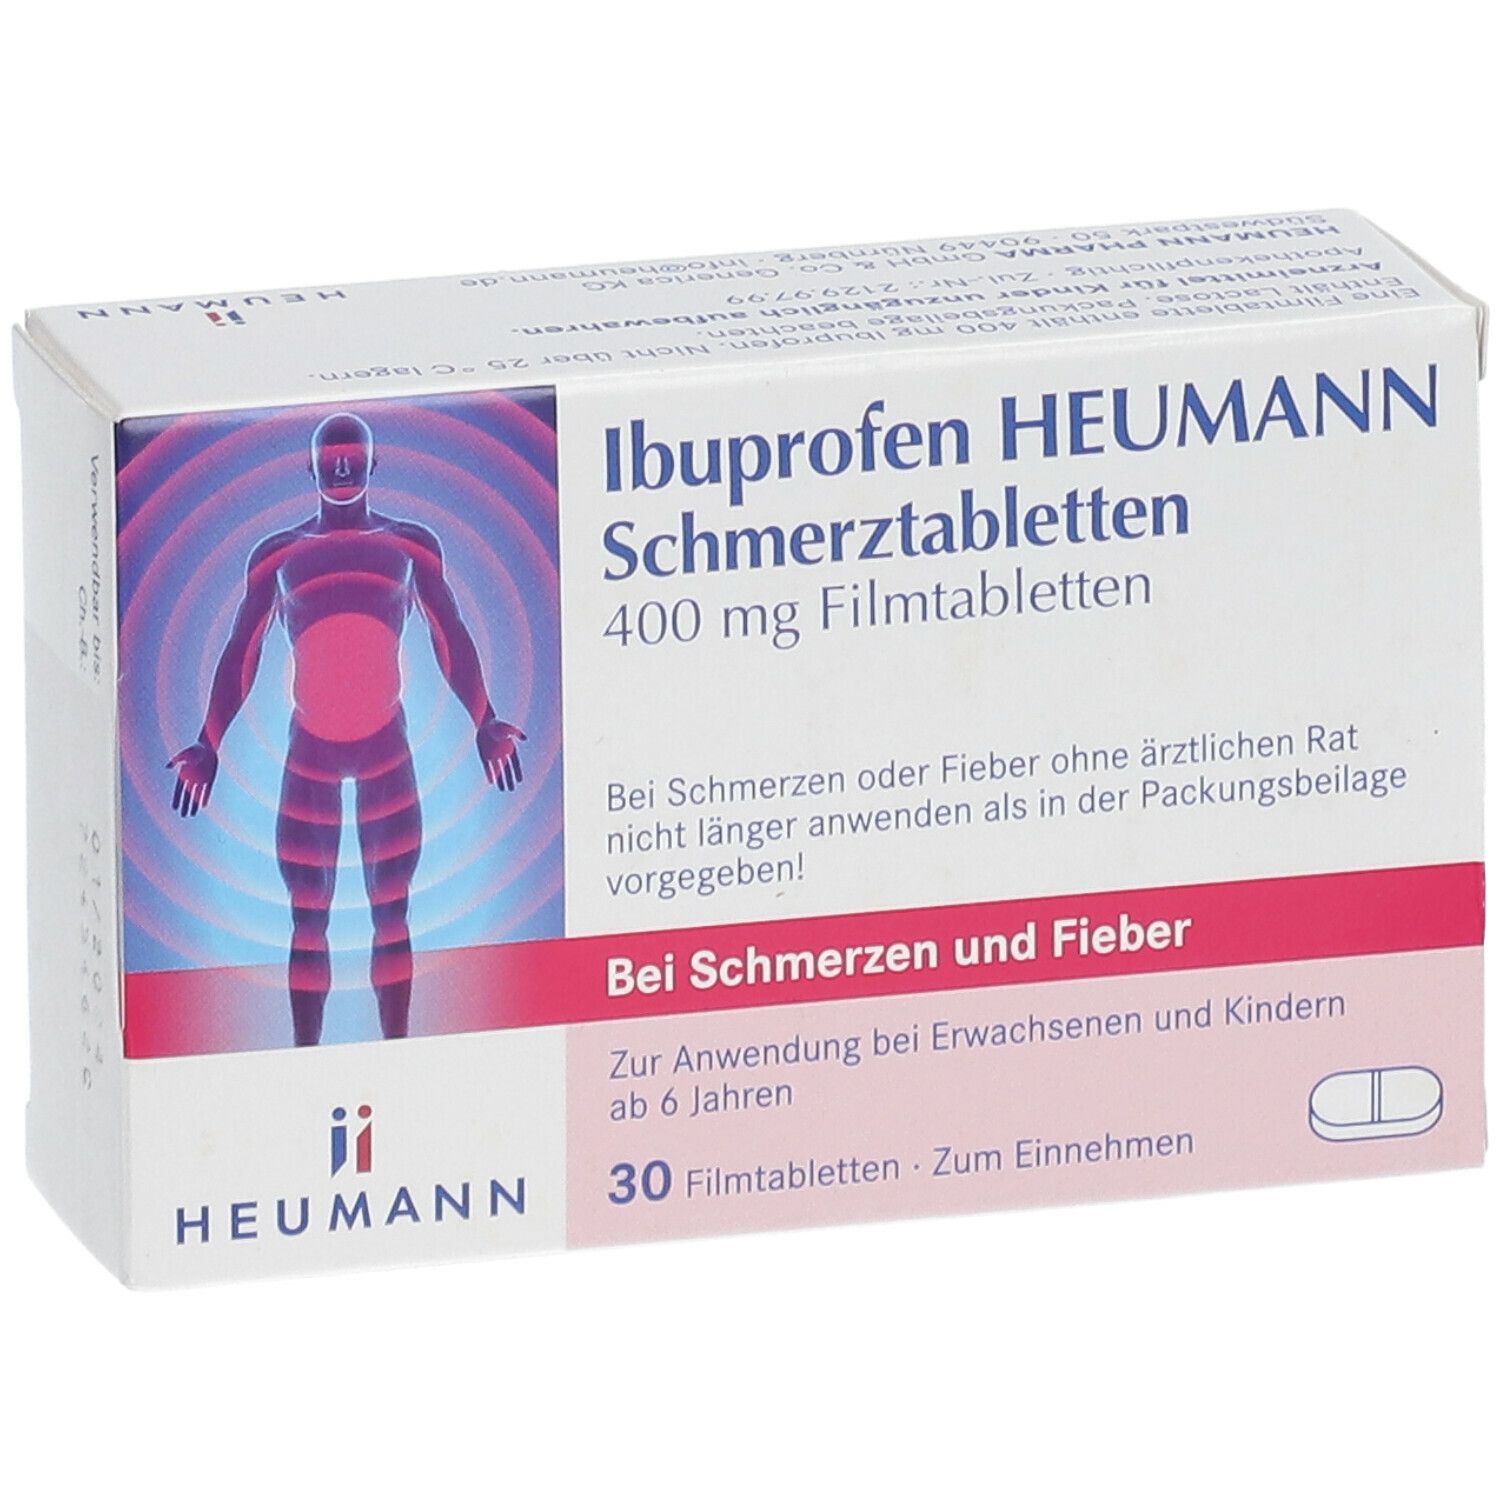 Ibuprofen Heumann 400mg